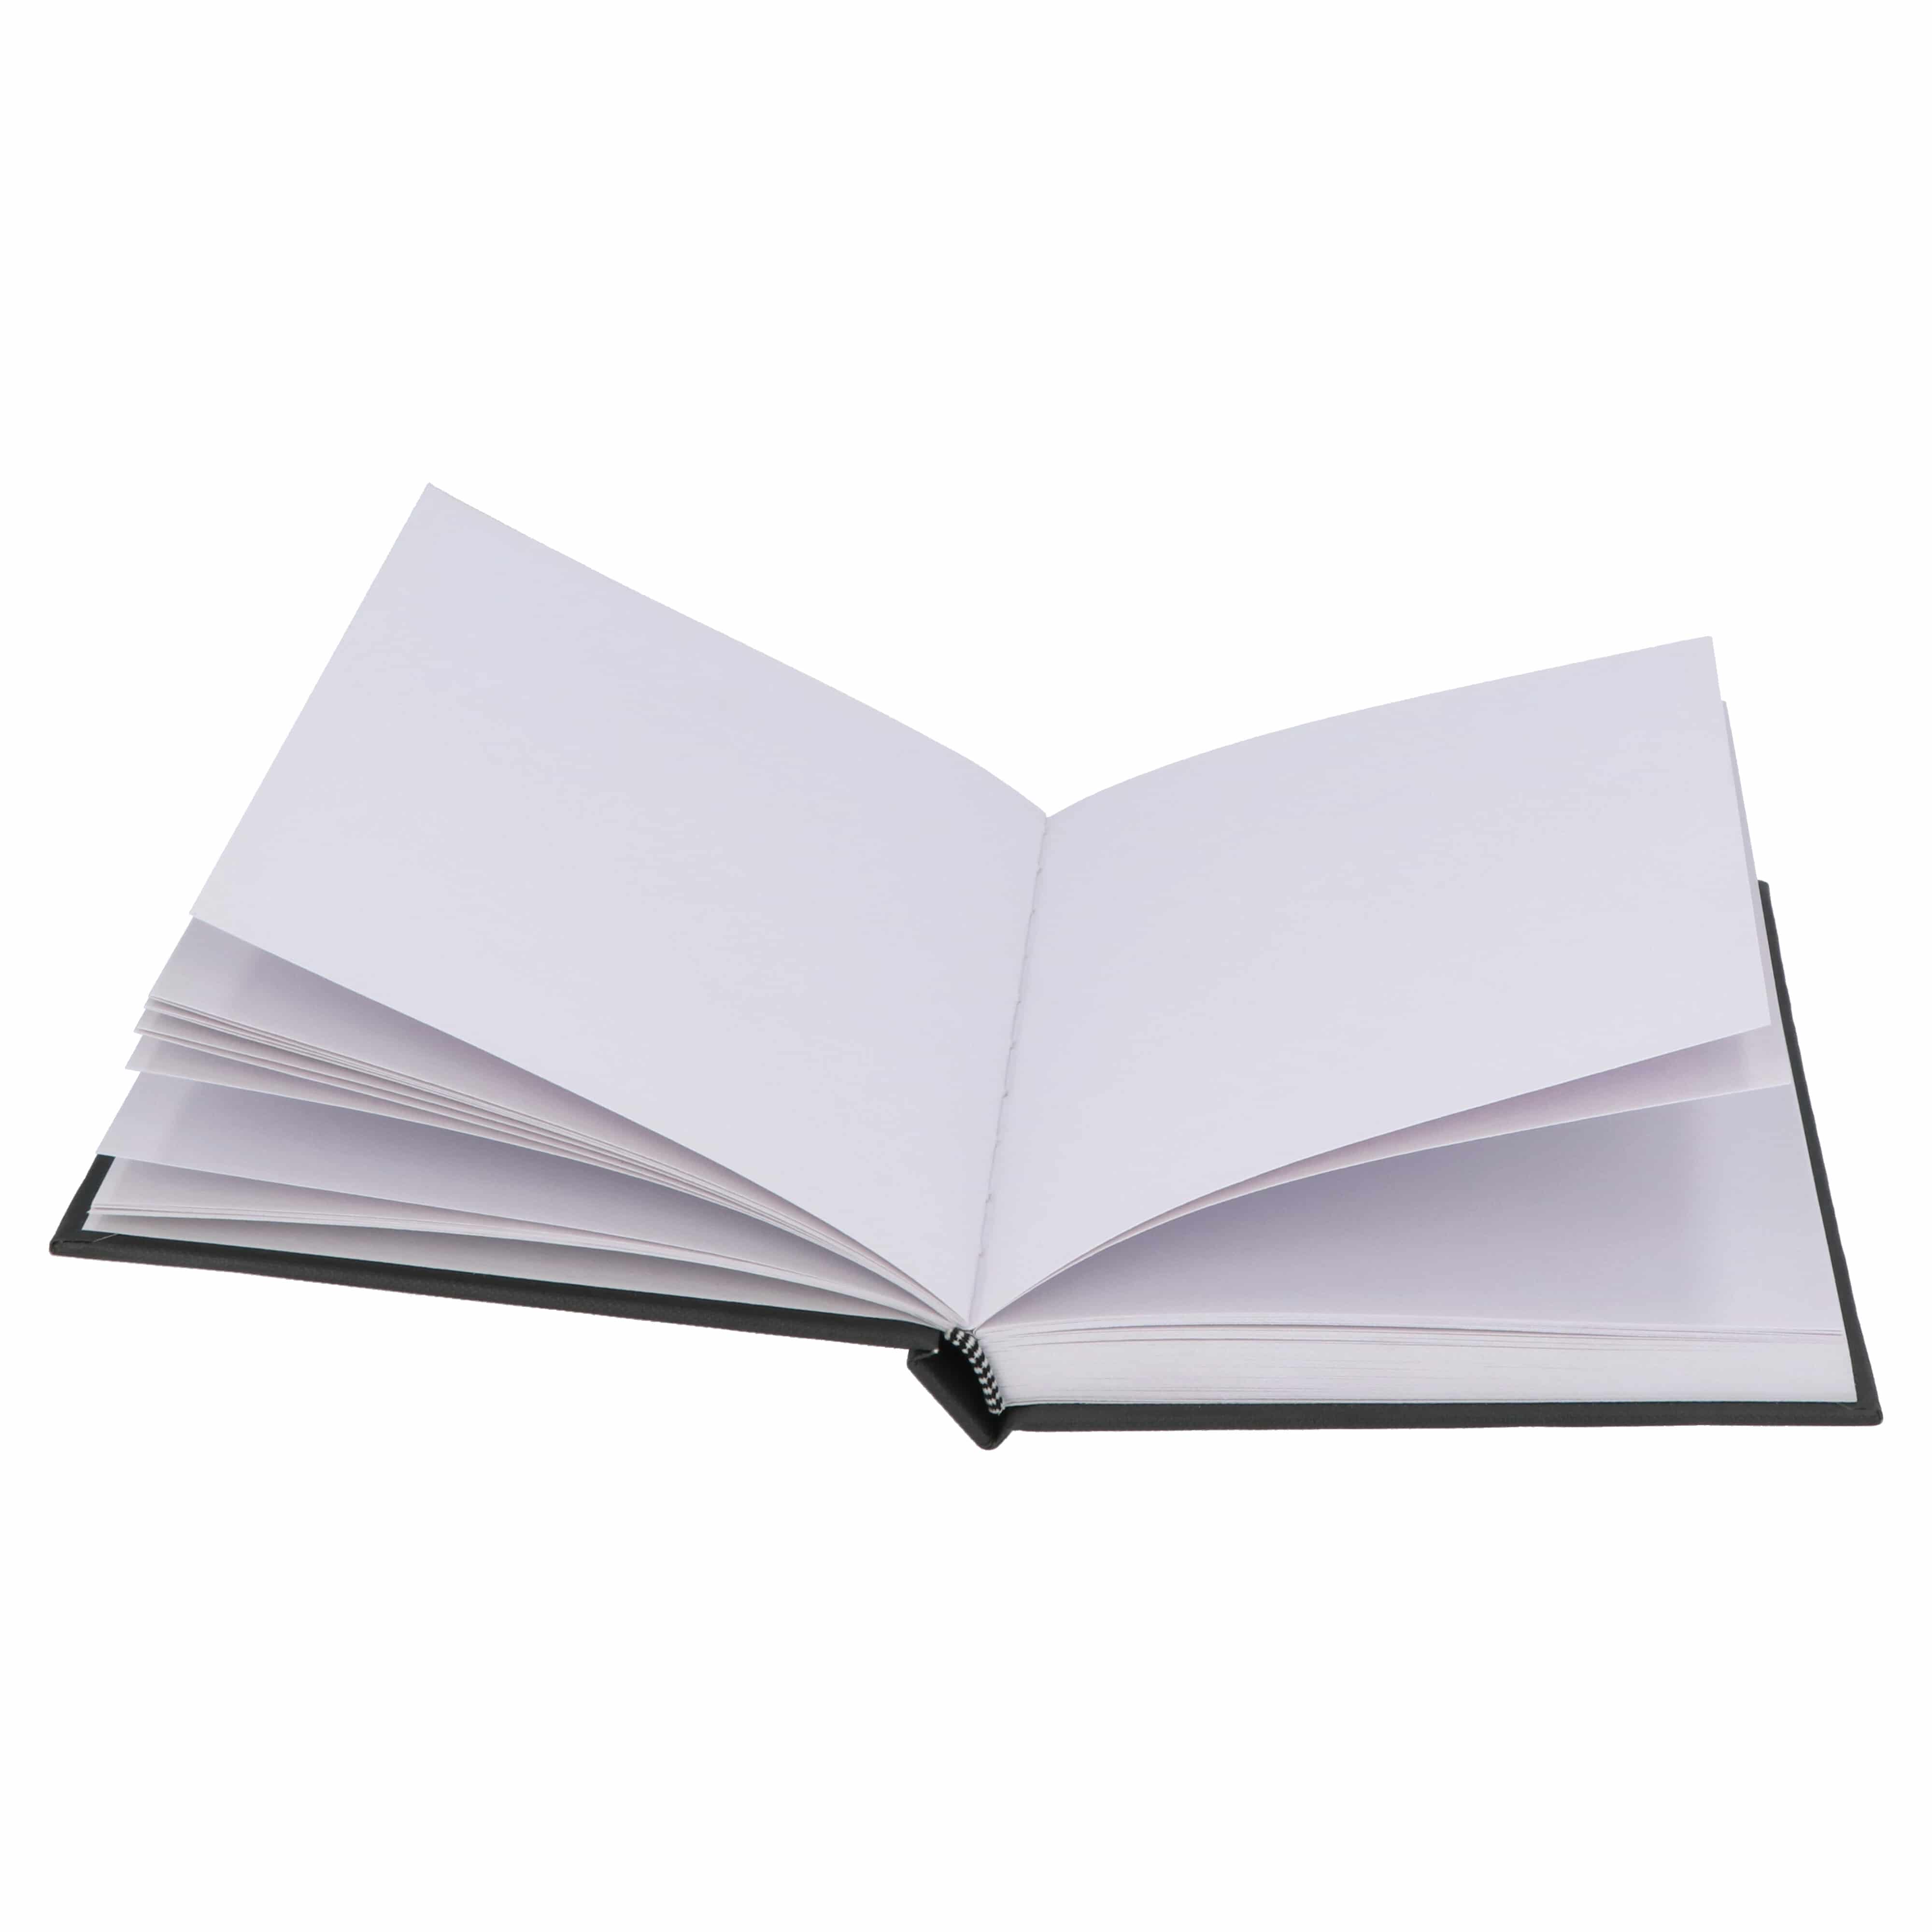 Mont Marte® Hardcover Schetsboek met Blanco vellen 110 gram A5